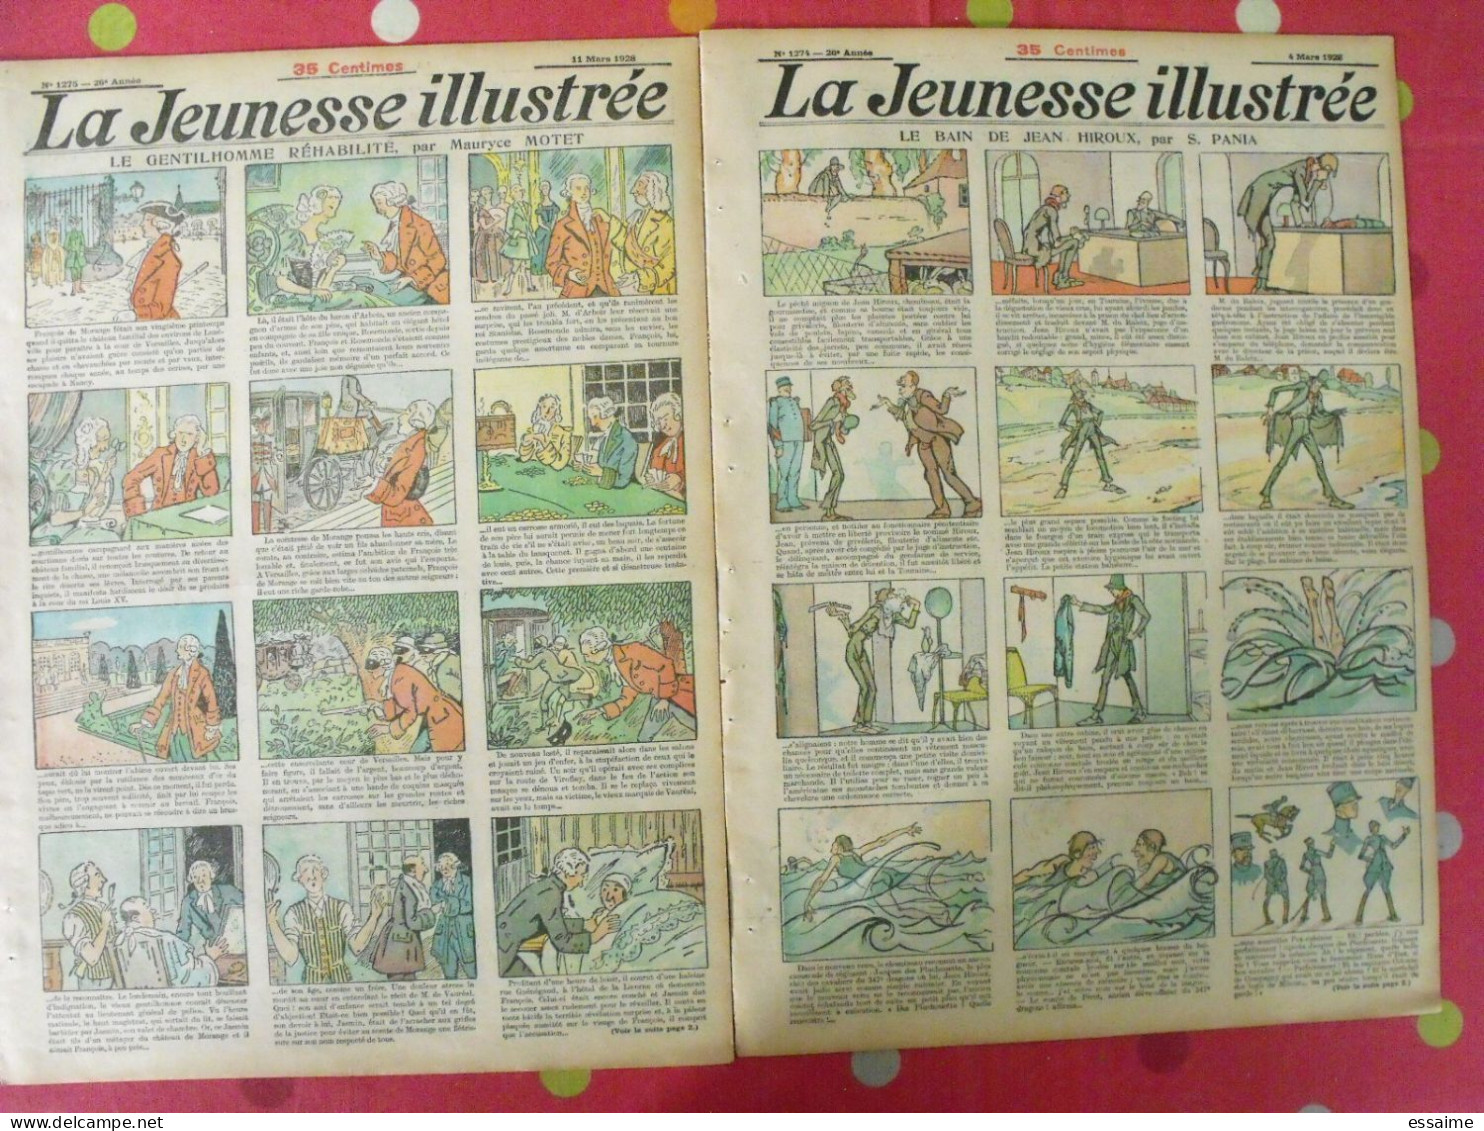 14 n° de La Jeunesse illustrée de 1927. à redécouvrir